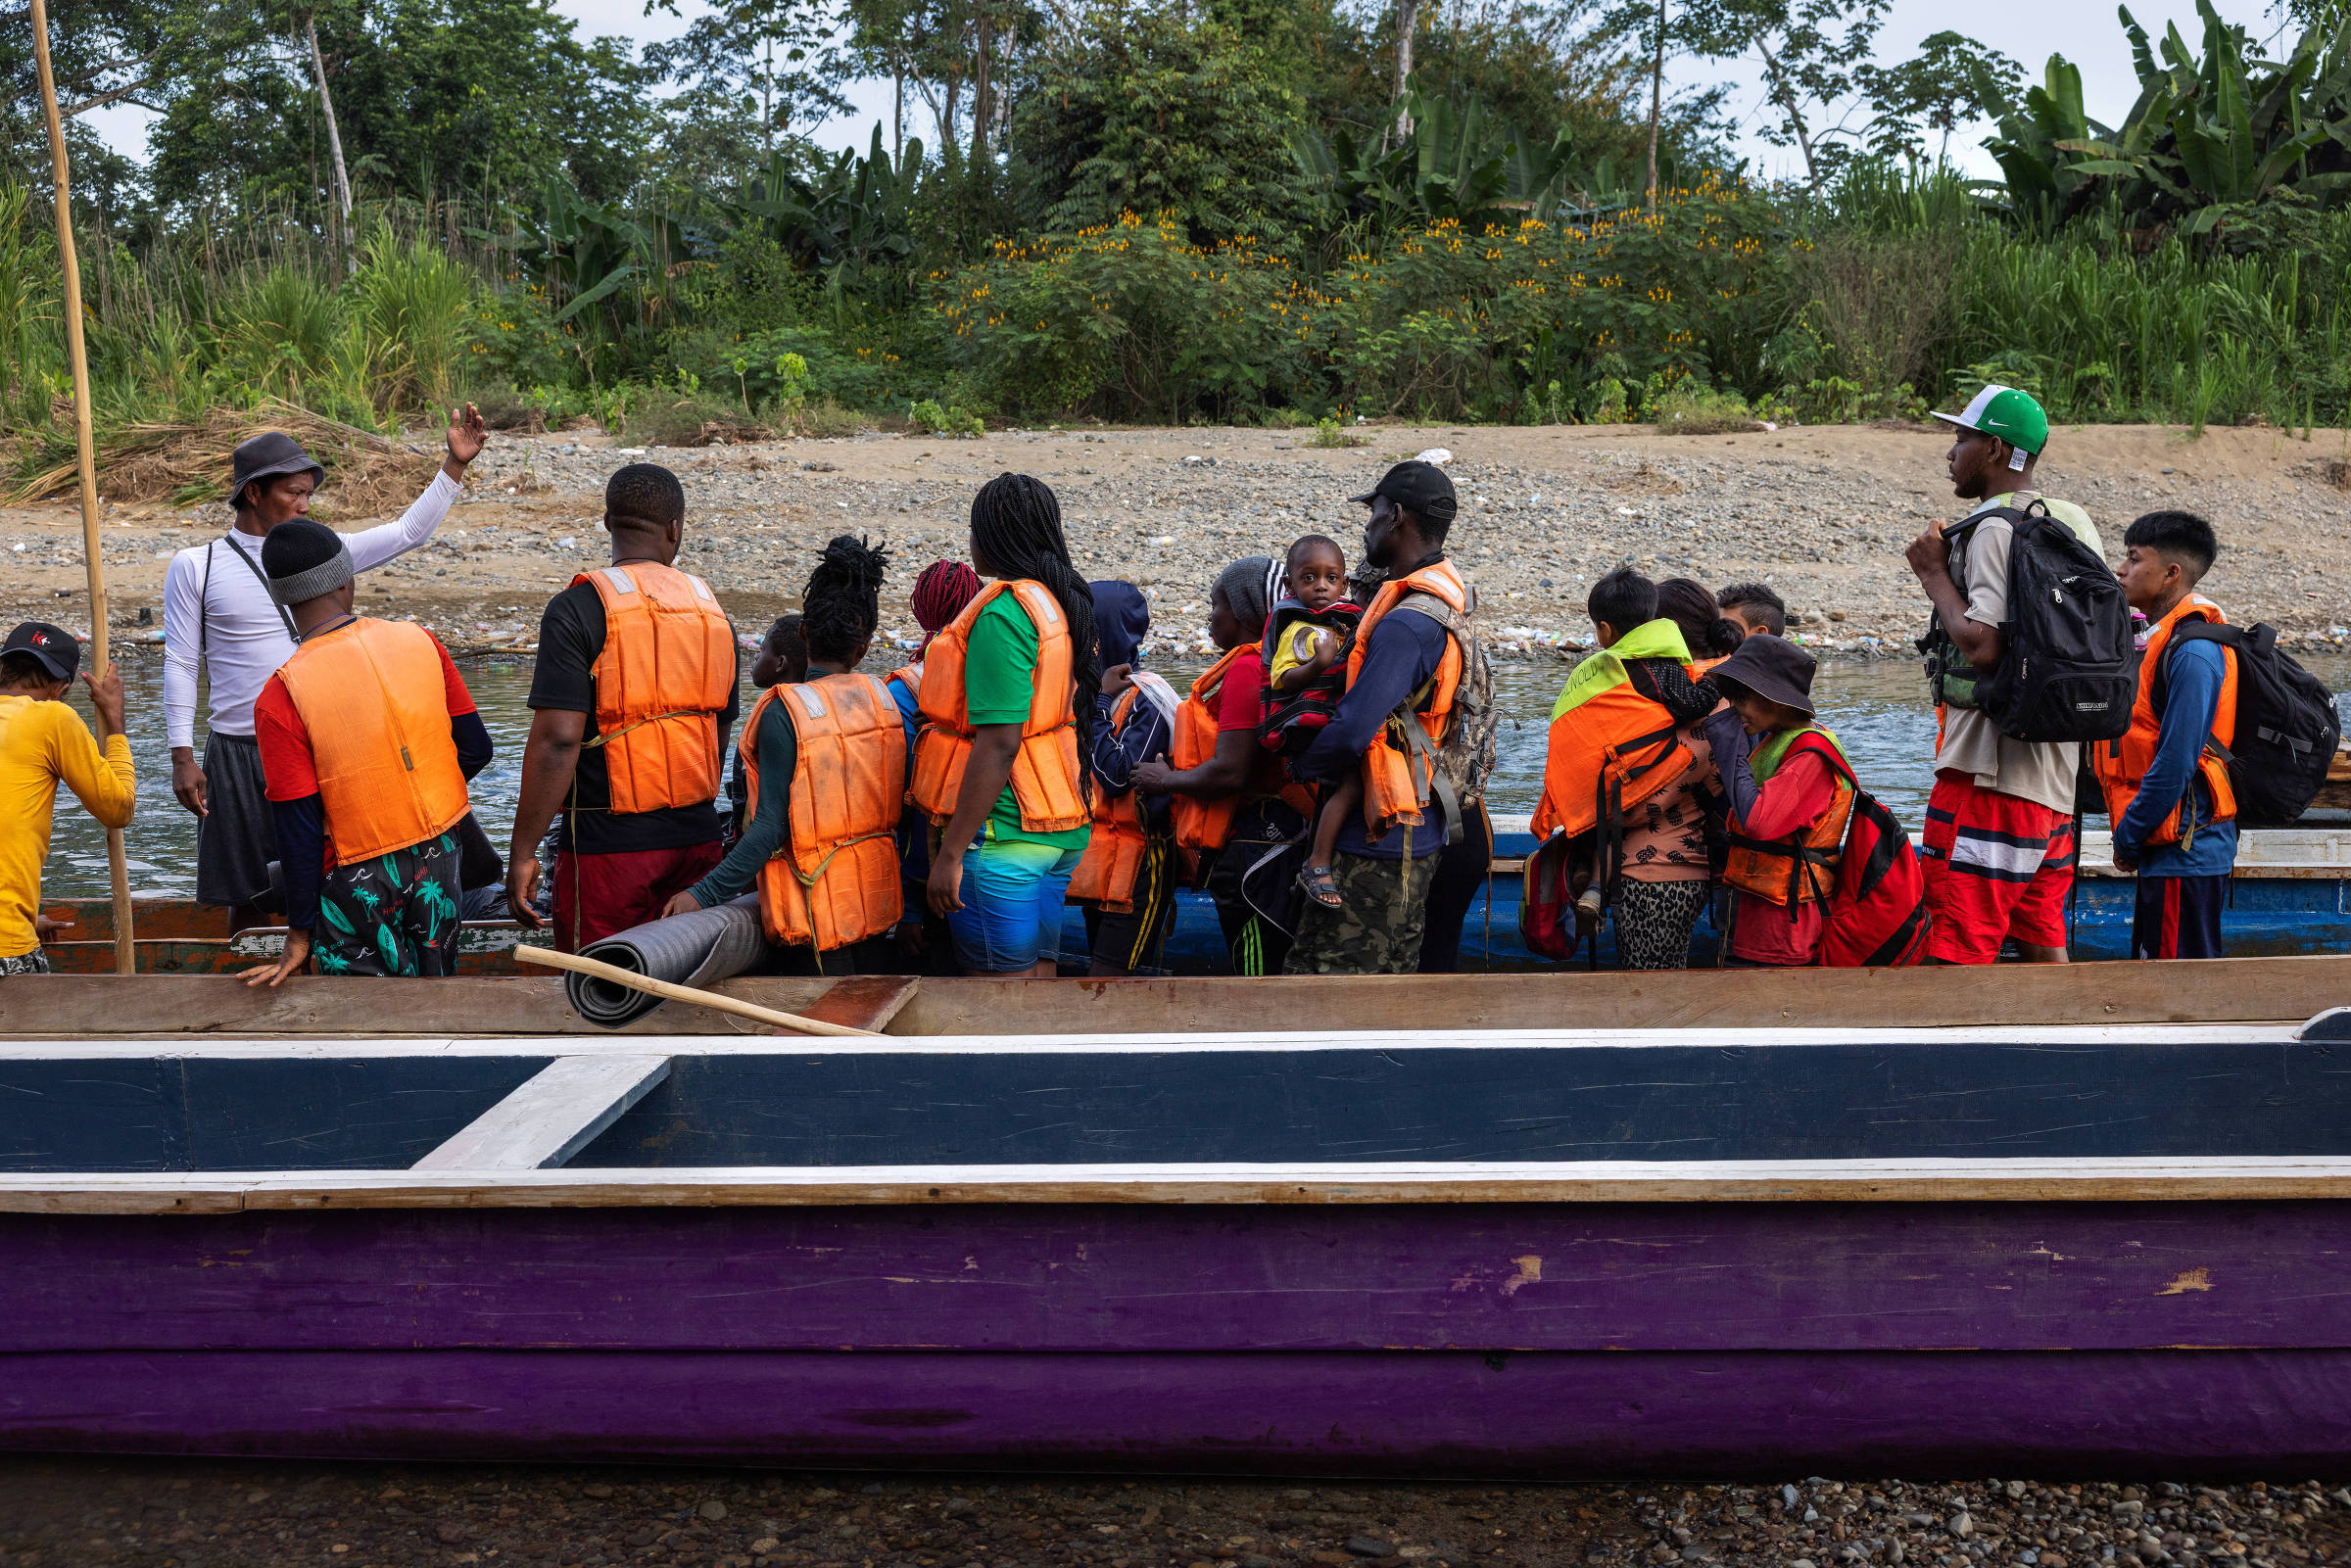 El brasileño Fiedimio, de 3 años, en brazos de su tío; se preparan para embarcar en una canoa en la comunidad indígena de Bajo Chiquito, que los llevará por el río Tuqueza hasta una estación migratoria